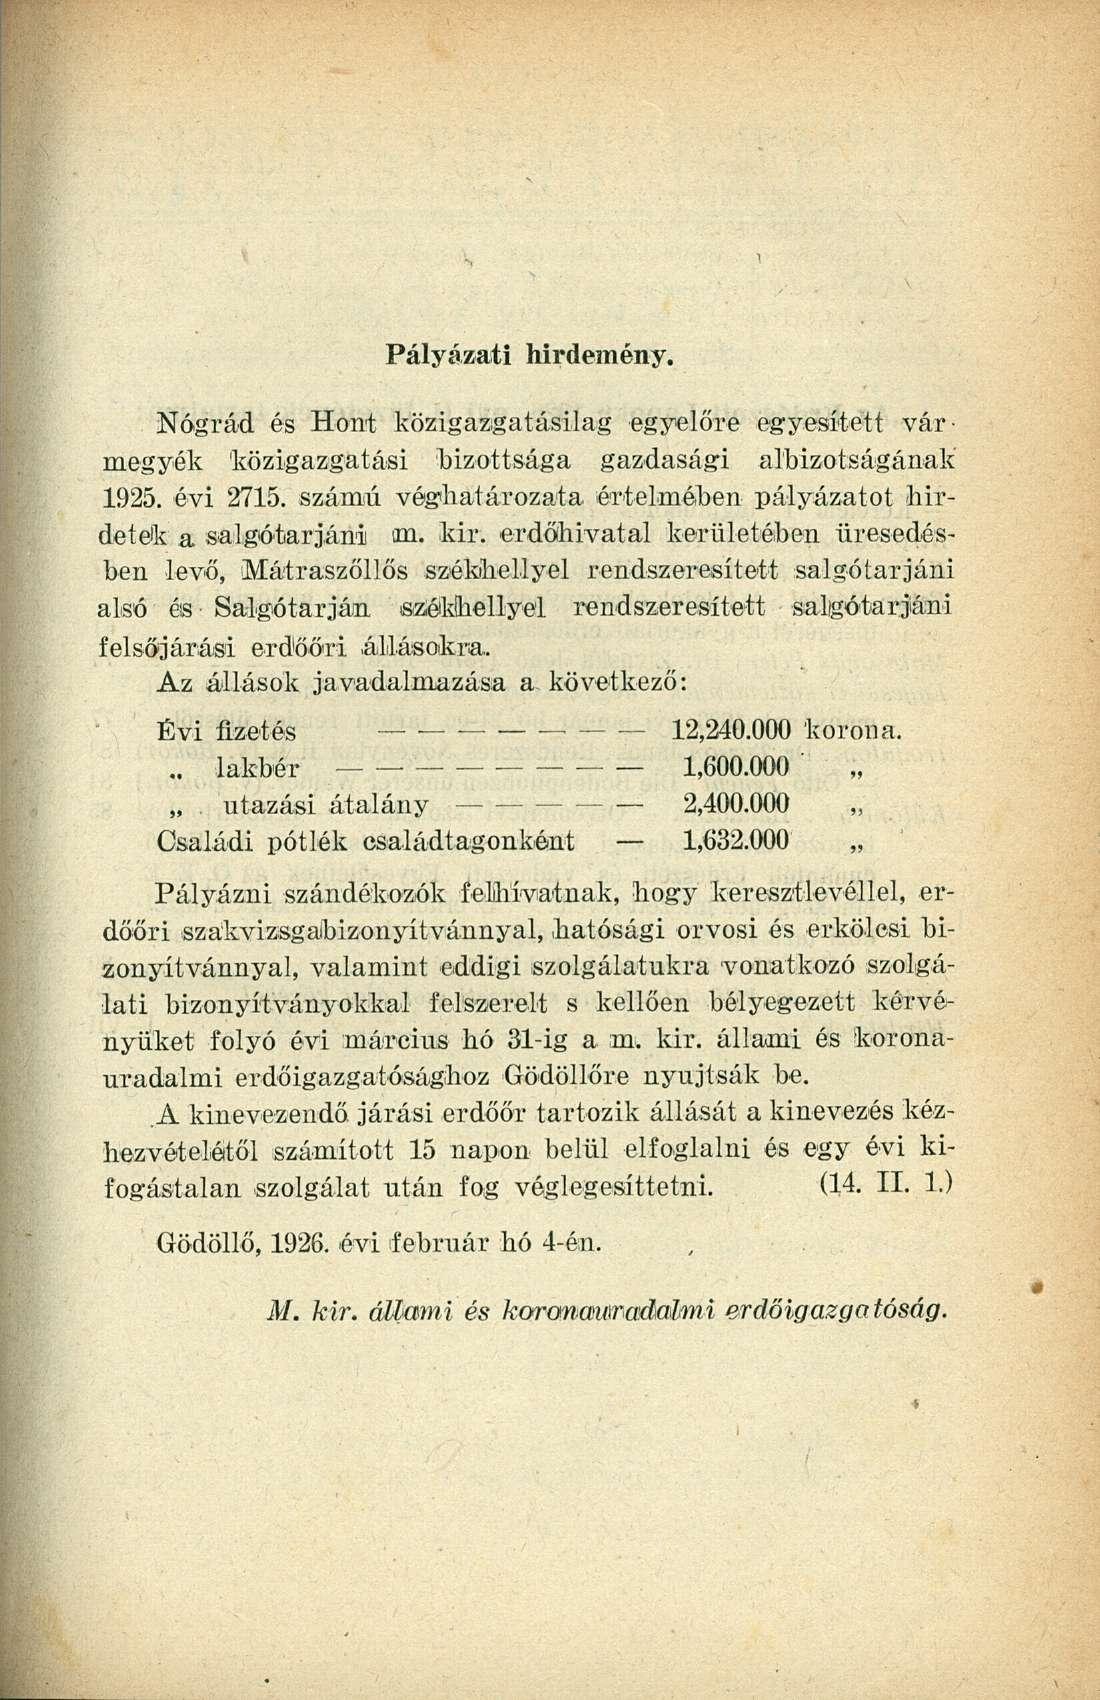 Pályázati hirdemény. Nógrád és Hont közigazgatásilag egyelőre egyesített vármegyék közigazgatási bizottsága gazdasági albizotságának 1925. évi 2715.